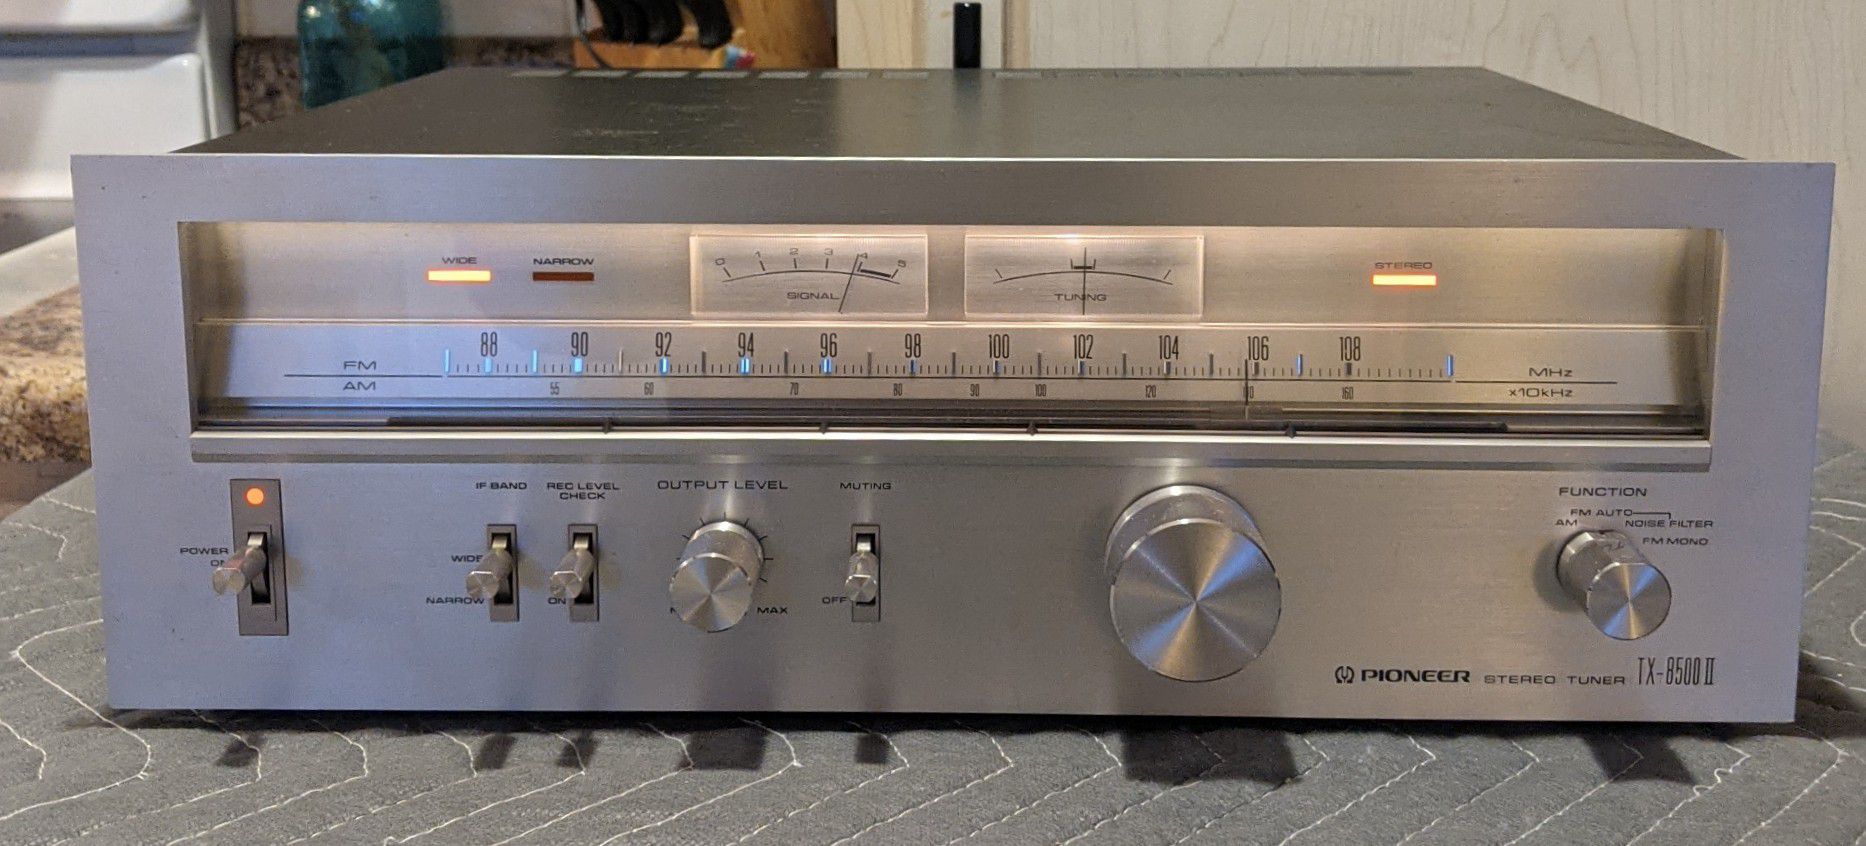 Vintage Pioneer TX-8500II Stereo Tuner